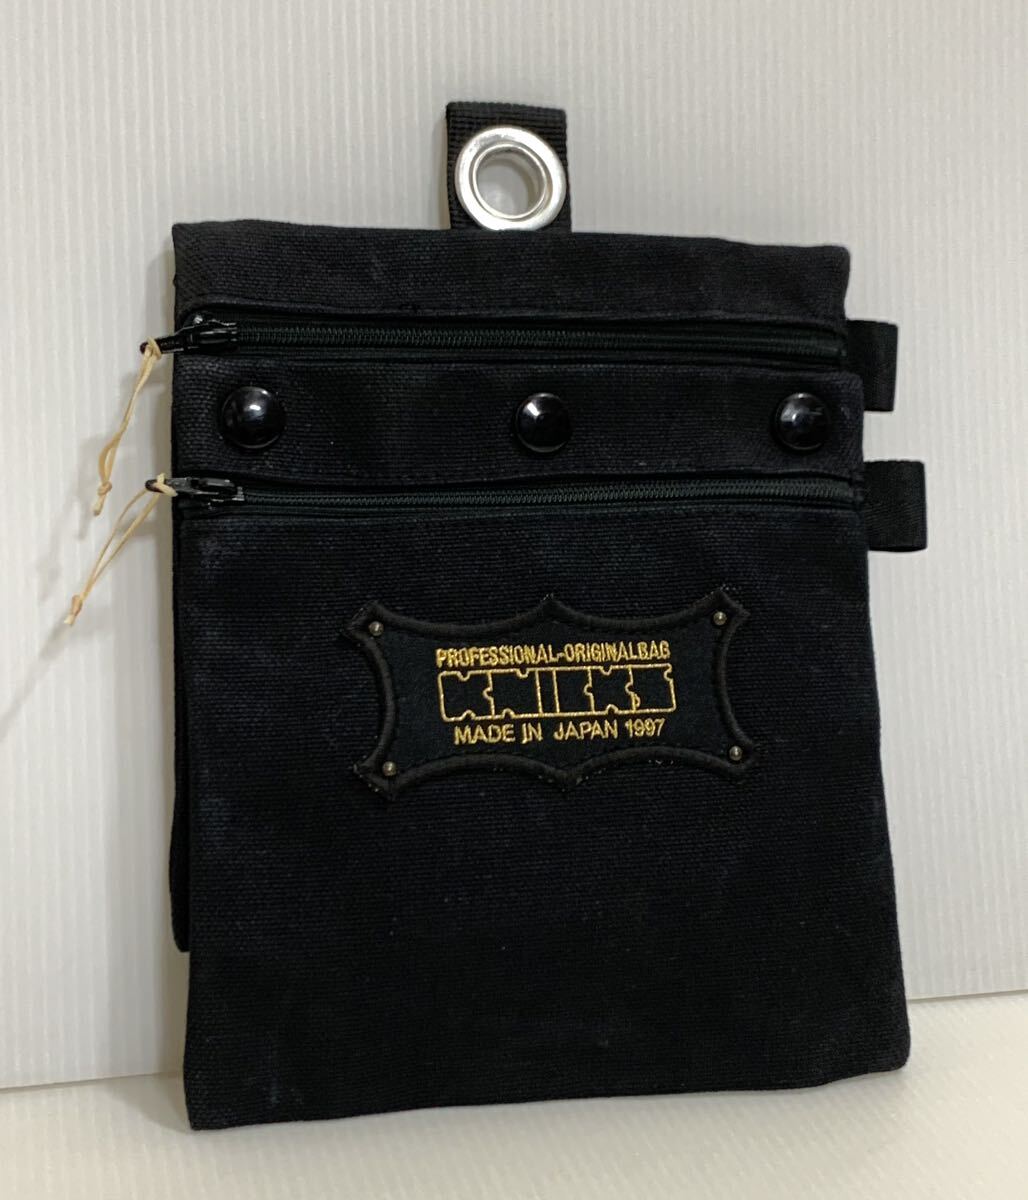 niksKNICKS сумка для инструметов бардачок DIY держатель для инструметов цвет : черный материалы : парусина земля размер : ширина примерный 16.5× длина примерный 20.5cm